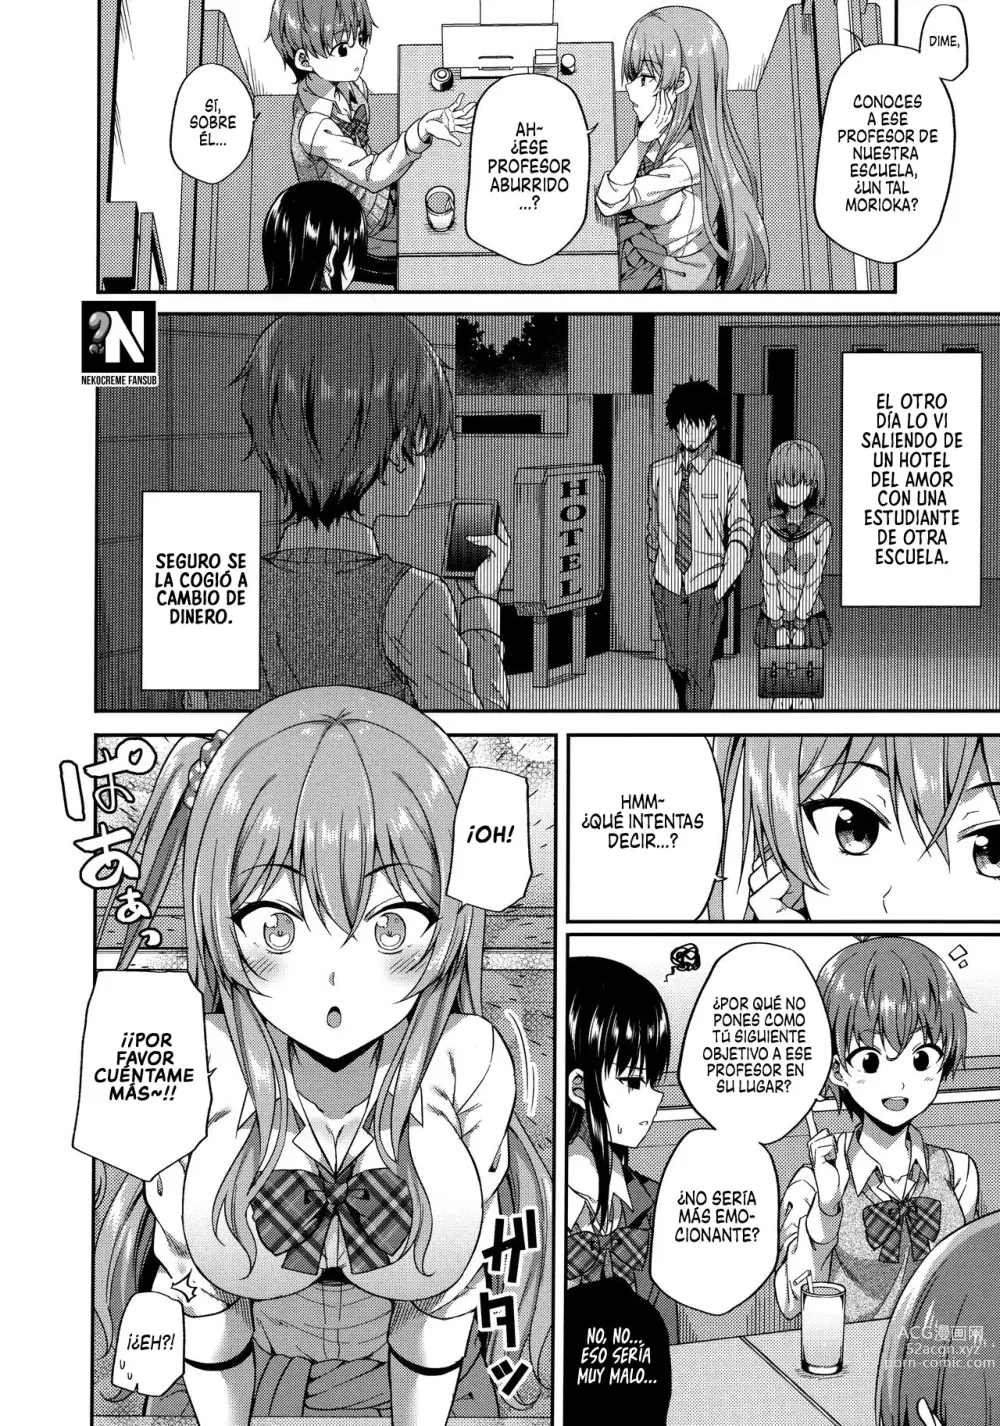 Page 6 of doujinshi ¿Te gustan las chicas que tienen citas compensadas?